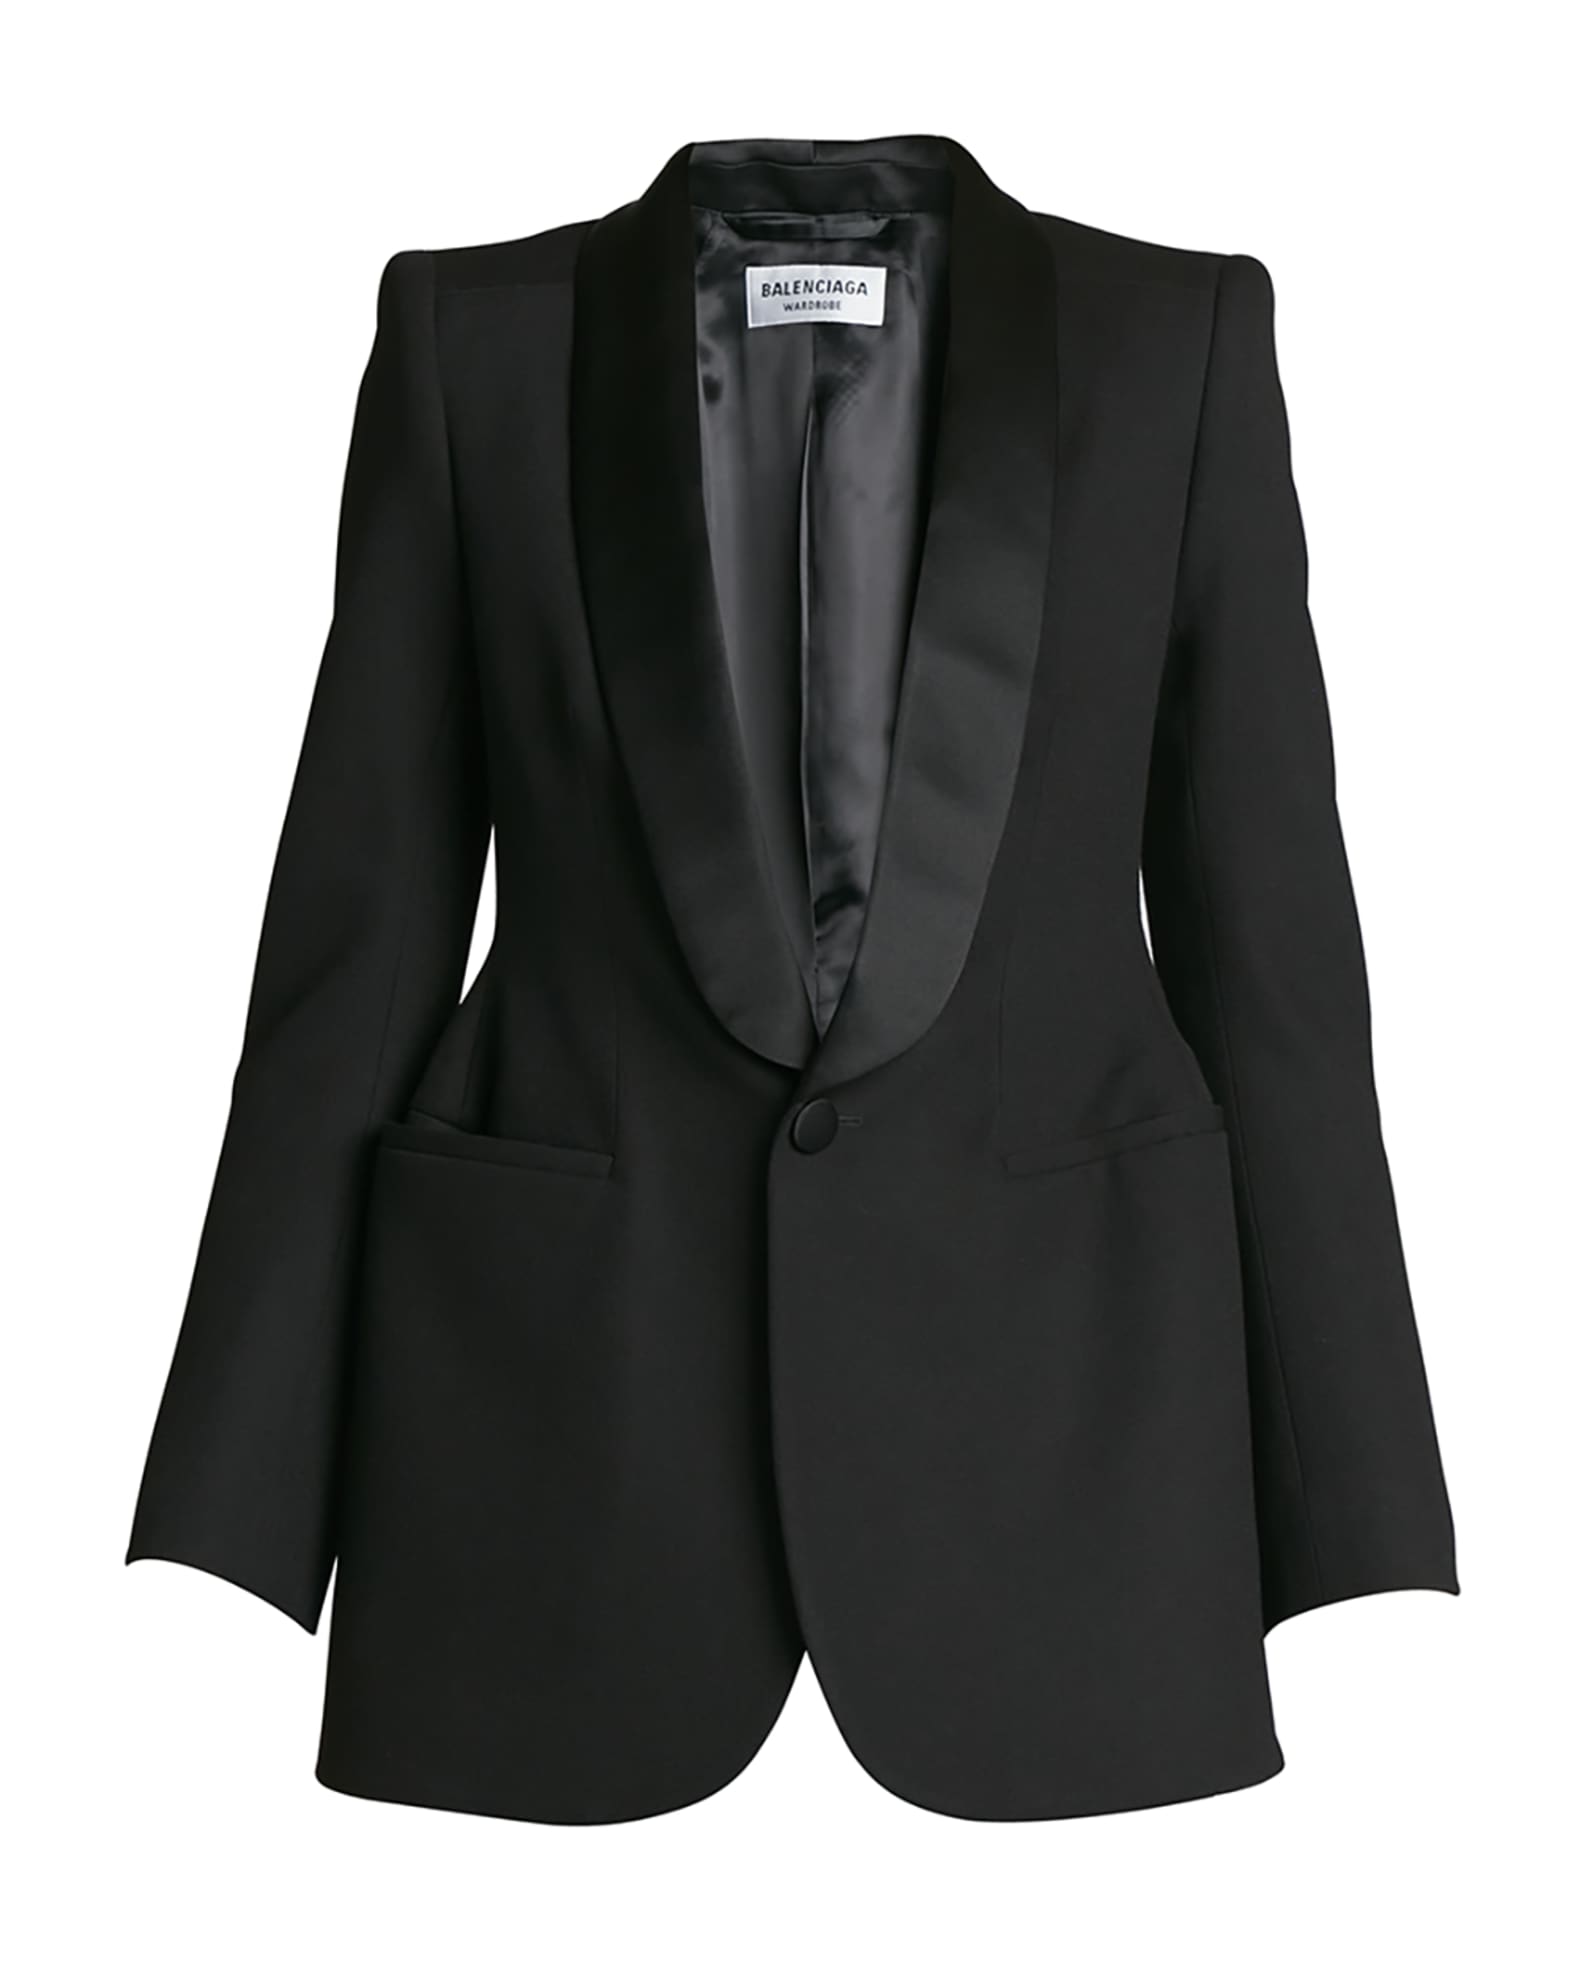 Balenciaga Barathea Hourglass Tuxedo Jacket | Neiman Marcus